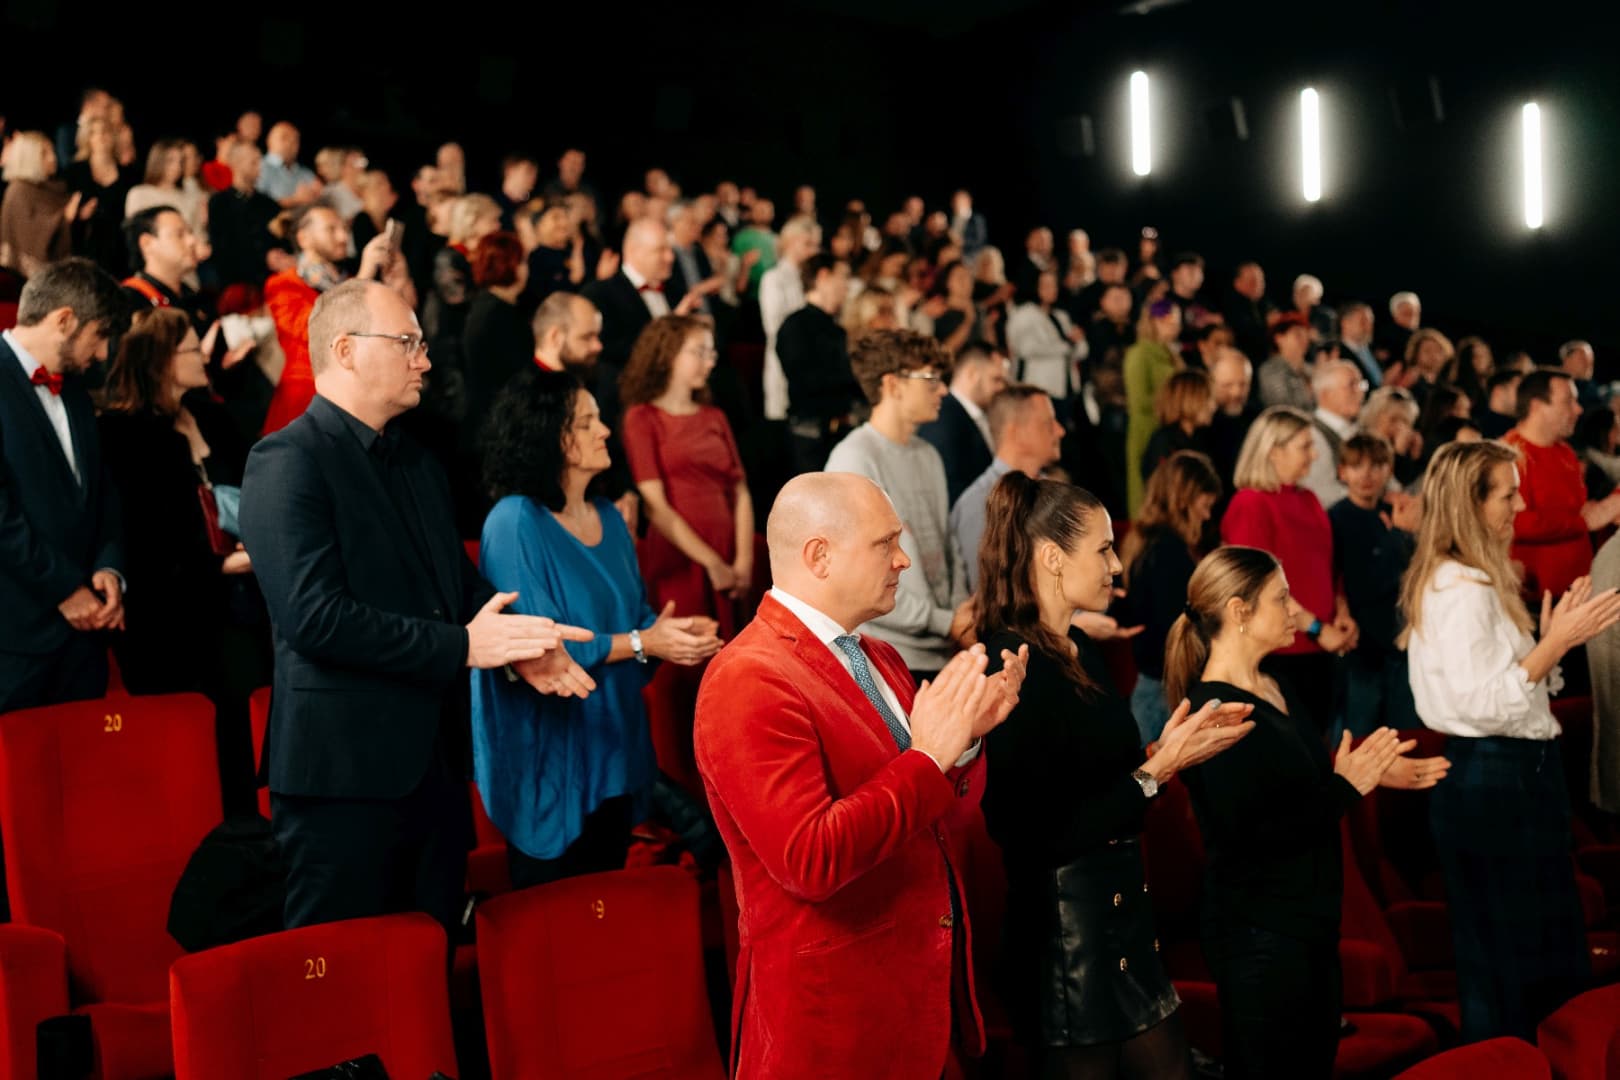 Mától látható a mozikban az elhunyt Juraj Jakubisko utolsó filmje, a premier előtti vetítésen állva tapsolt a közönség